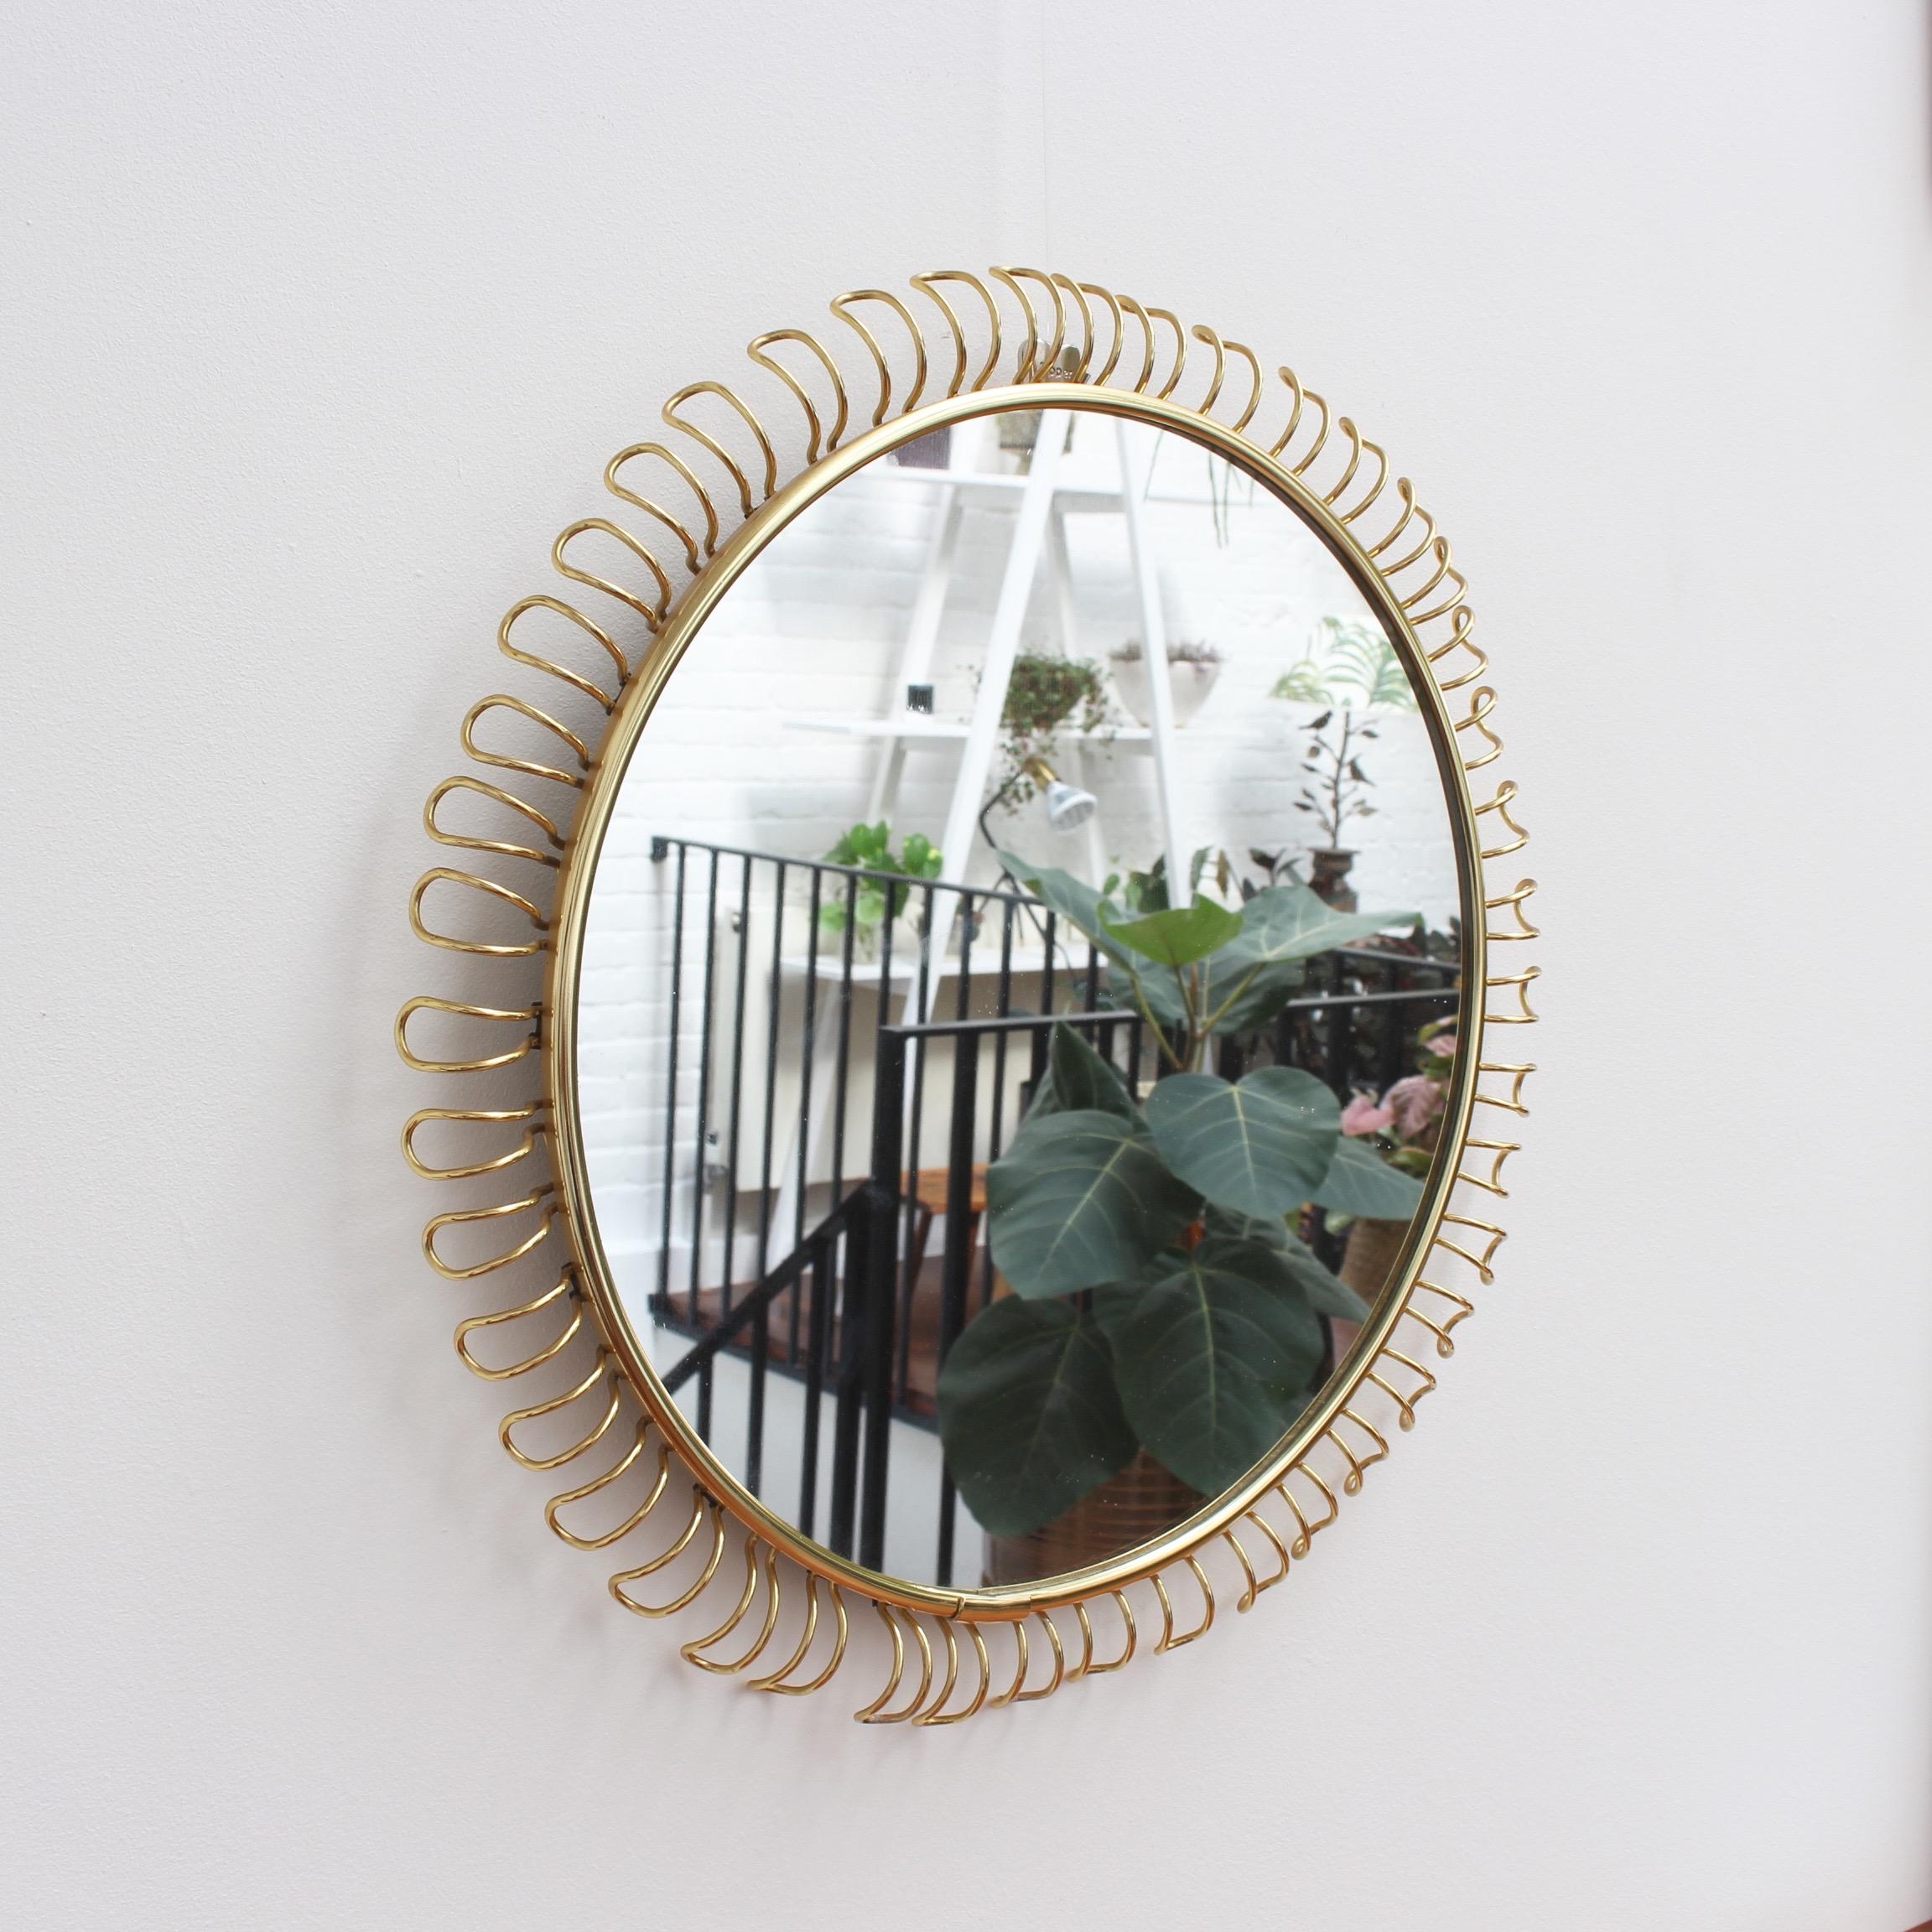 Scandinavian Modern Round Wall Mirror in Brass with Decorative Surround by Josef Frank